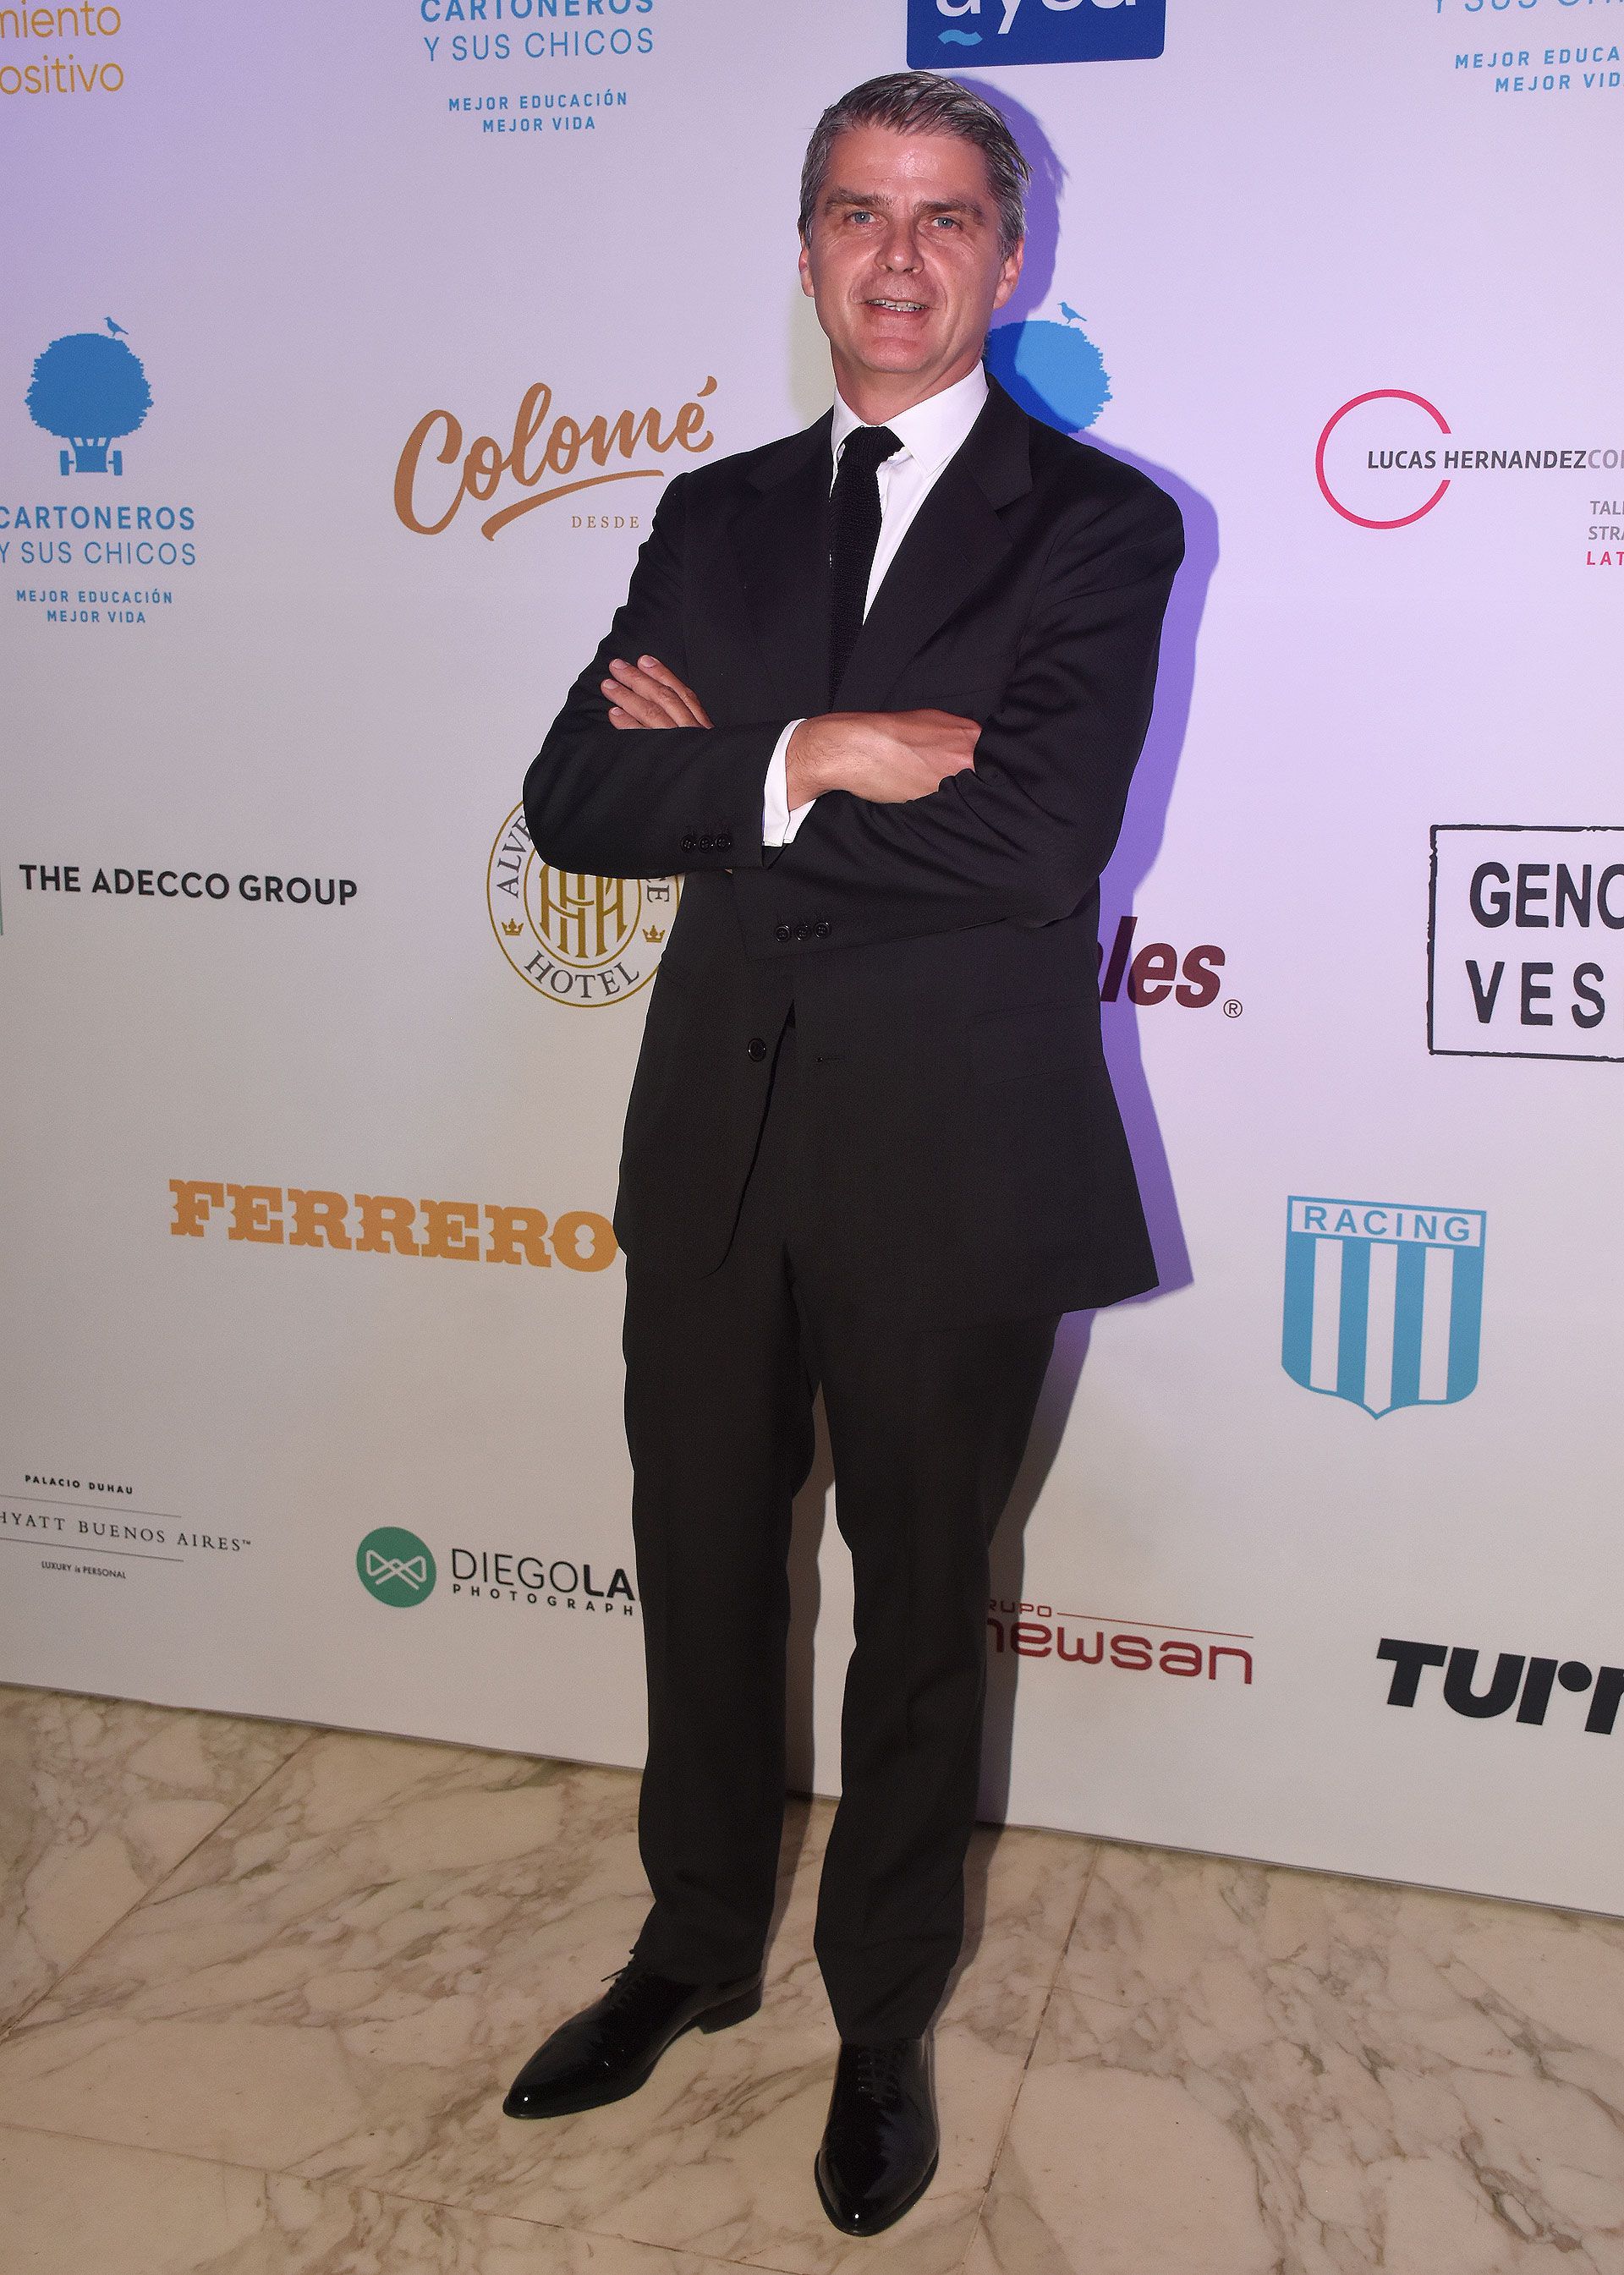 Hervé Pollet, presidente de la Fundación Cartoneros y sus Chicos 